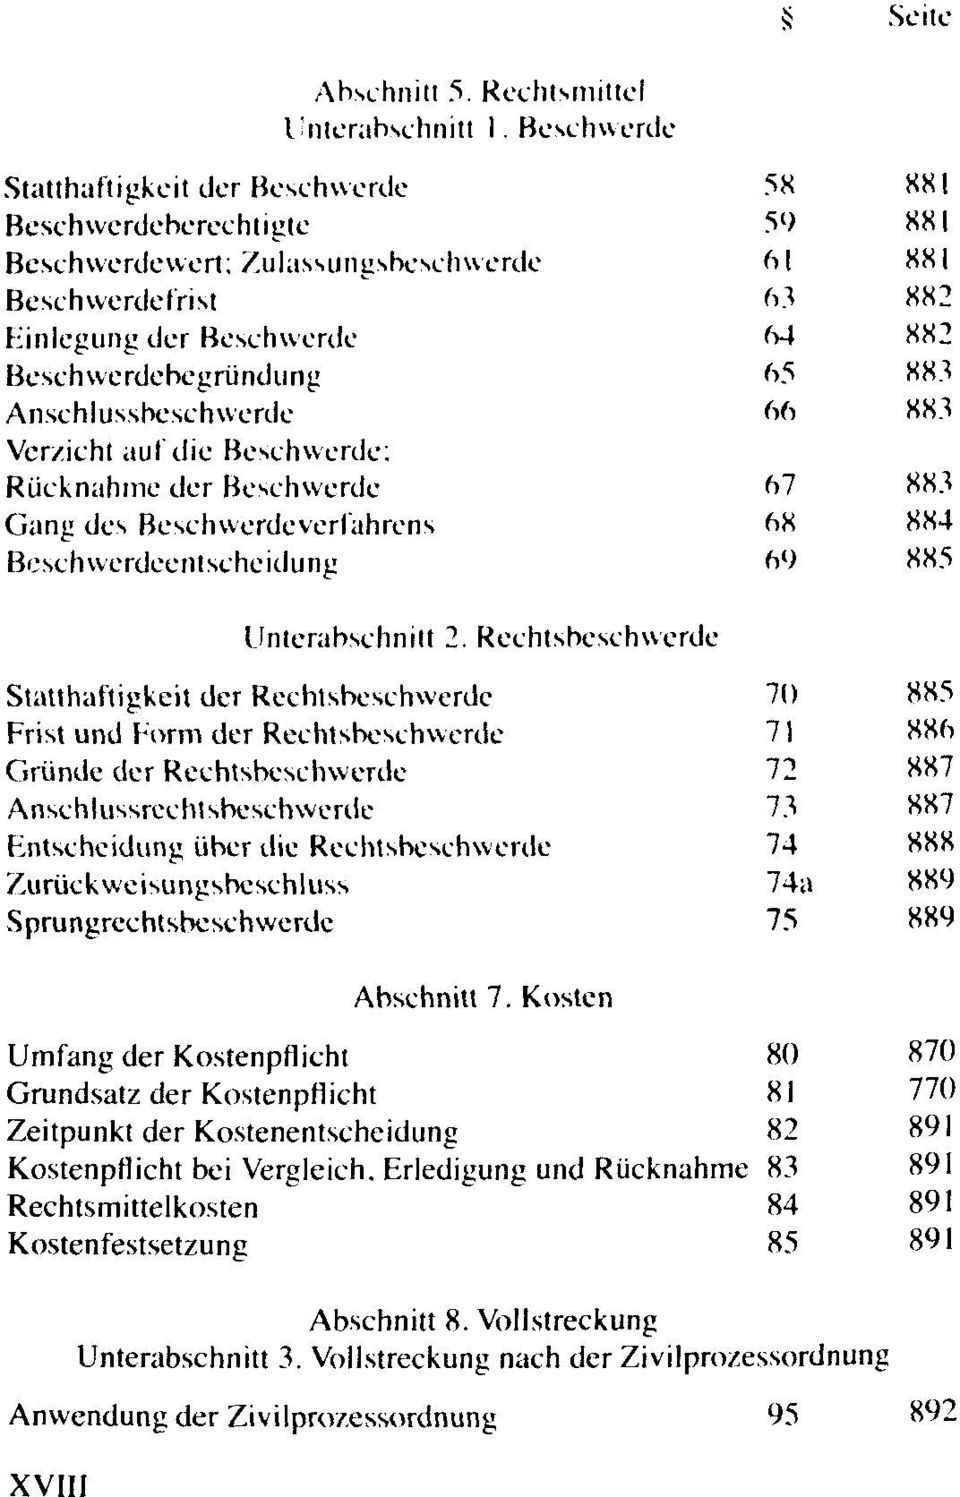 die Beschwerde: Rücknahme der Beschwerde Gang des Beschwerdeverlahrens Bf.'seh werdeentscheidung Unterabschnitt 2.